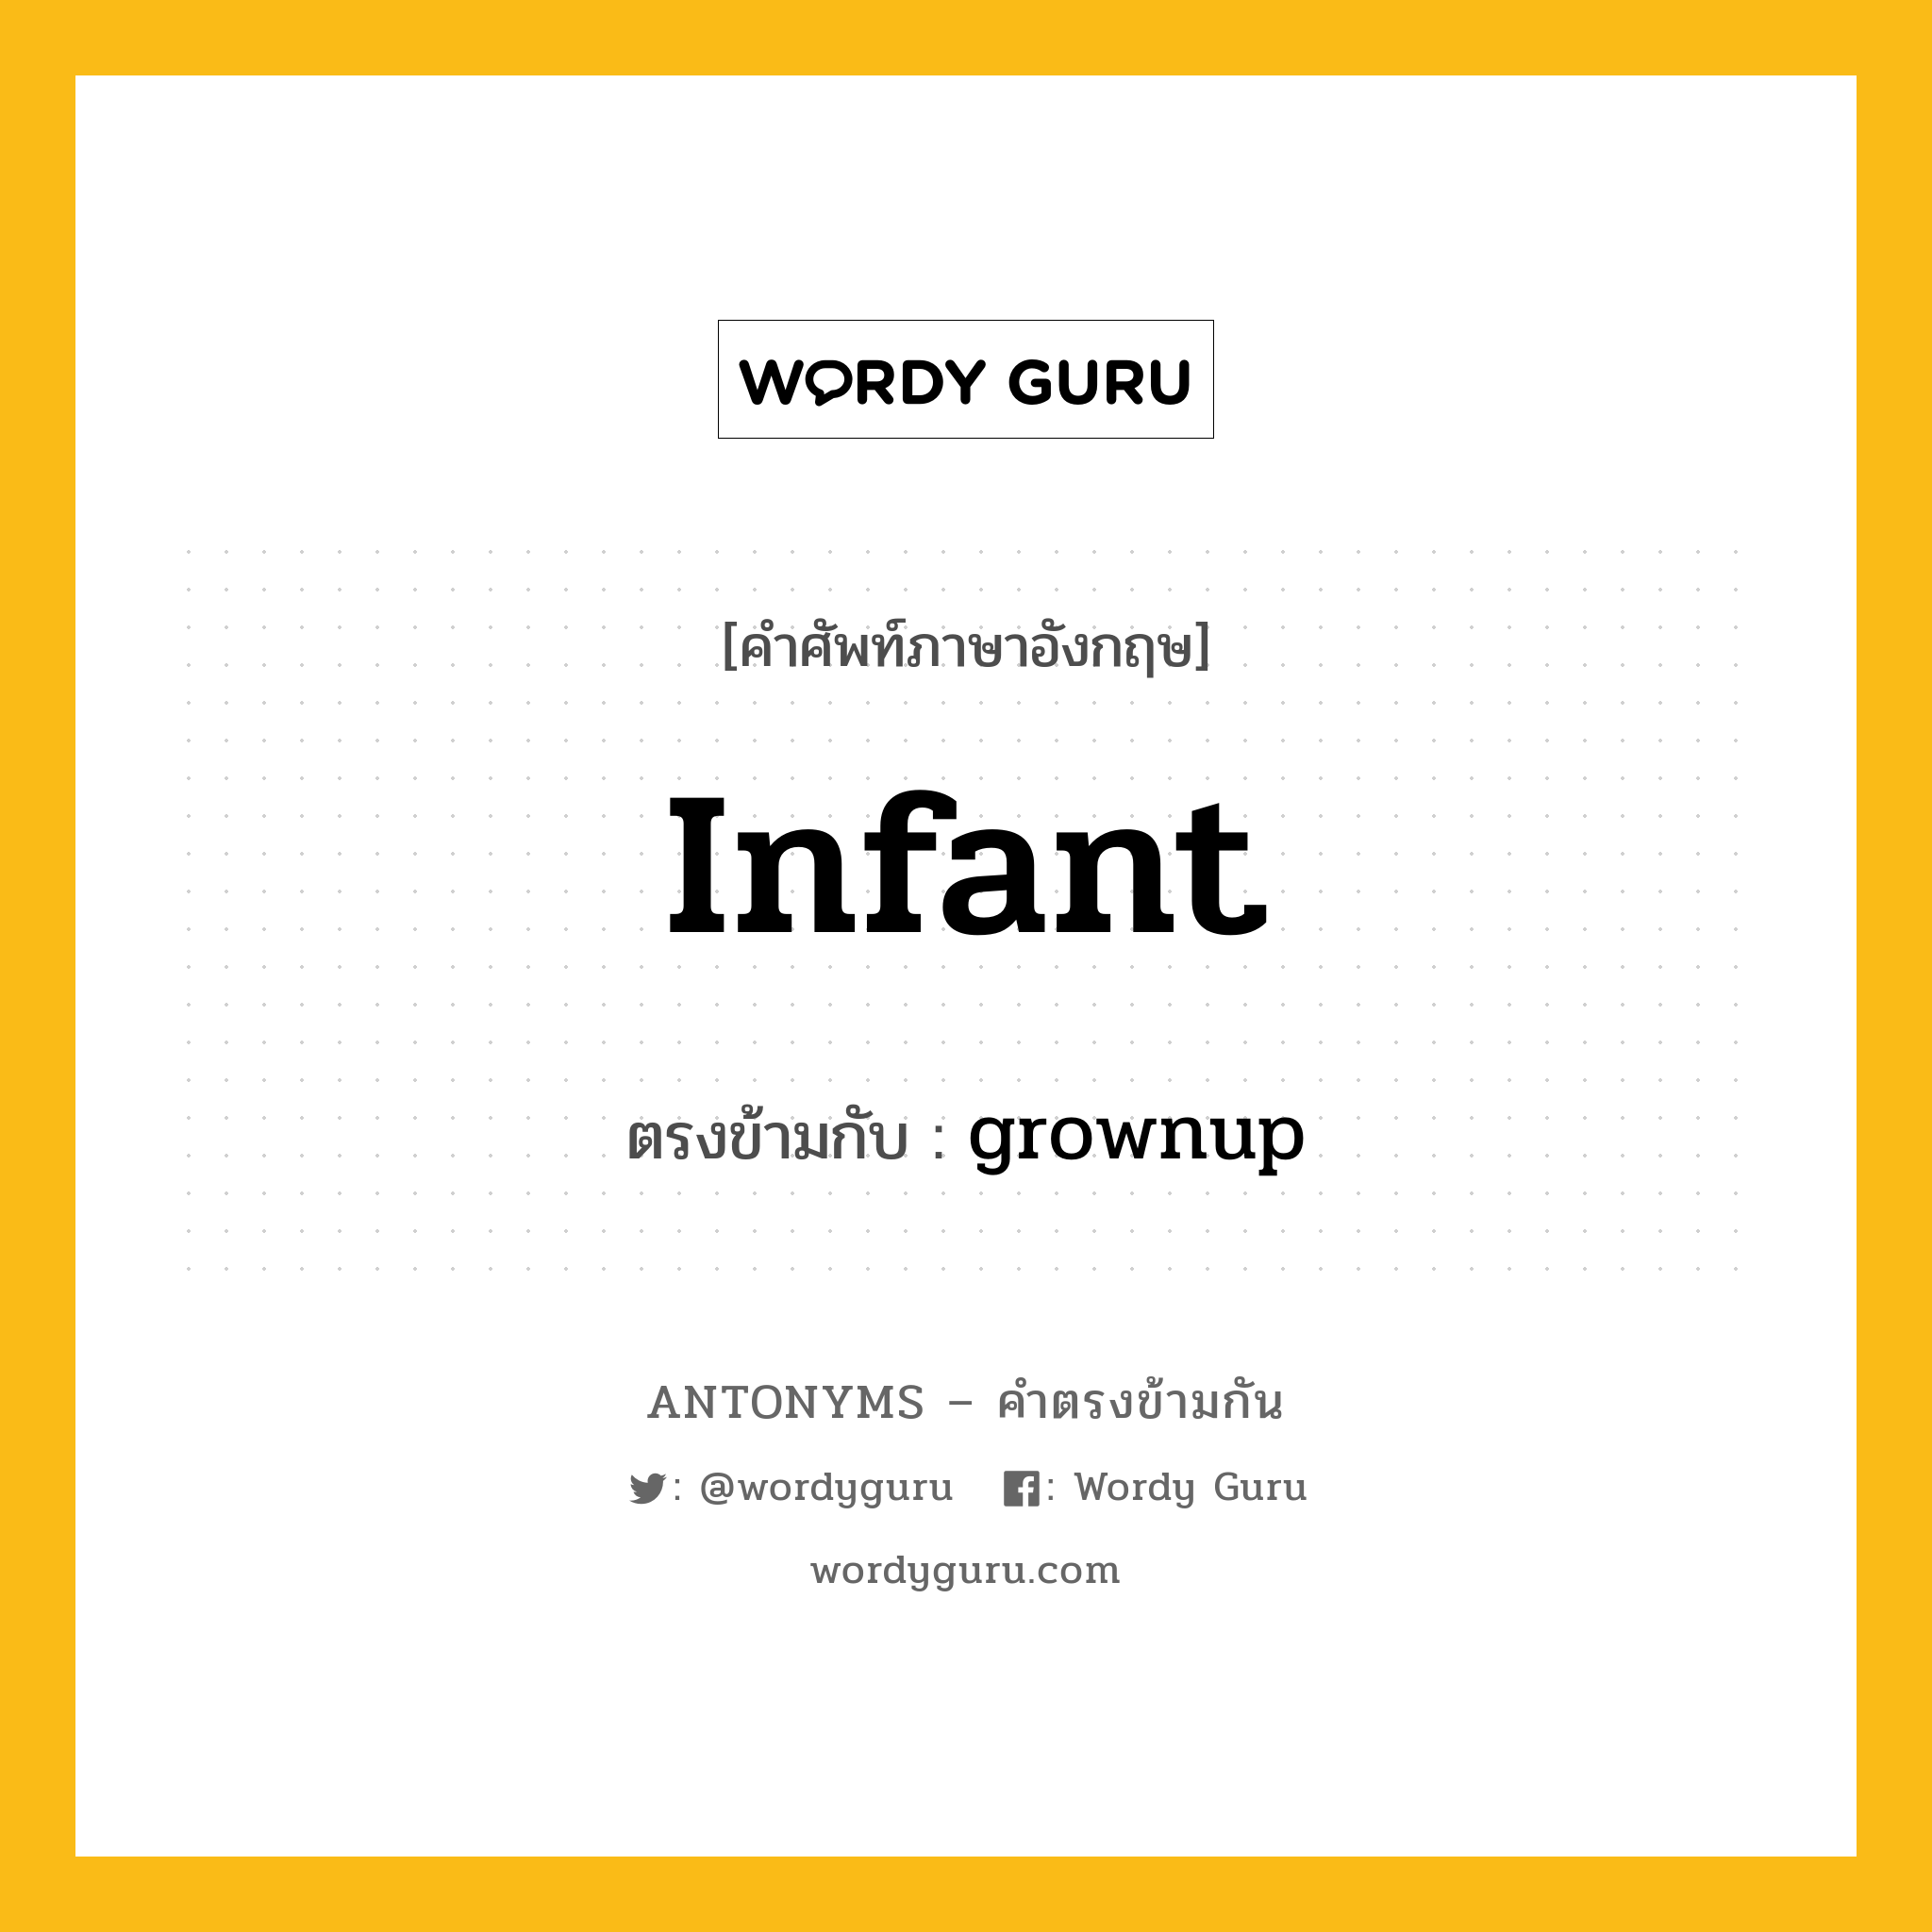 infant เป็นคำตรงข้ามกับคำไหนบ้าง?, คำศัพท์ภาษาอังกฤษ infant ตรงข้ามกับ grownup หมวด grownup